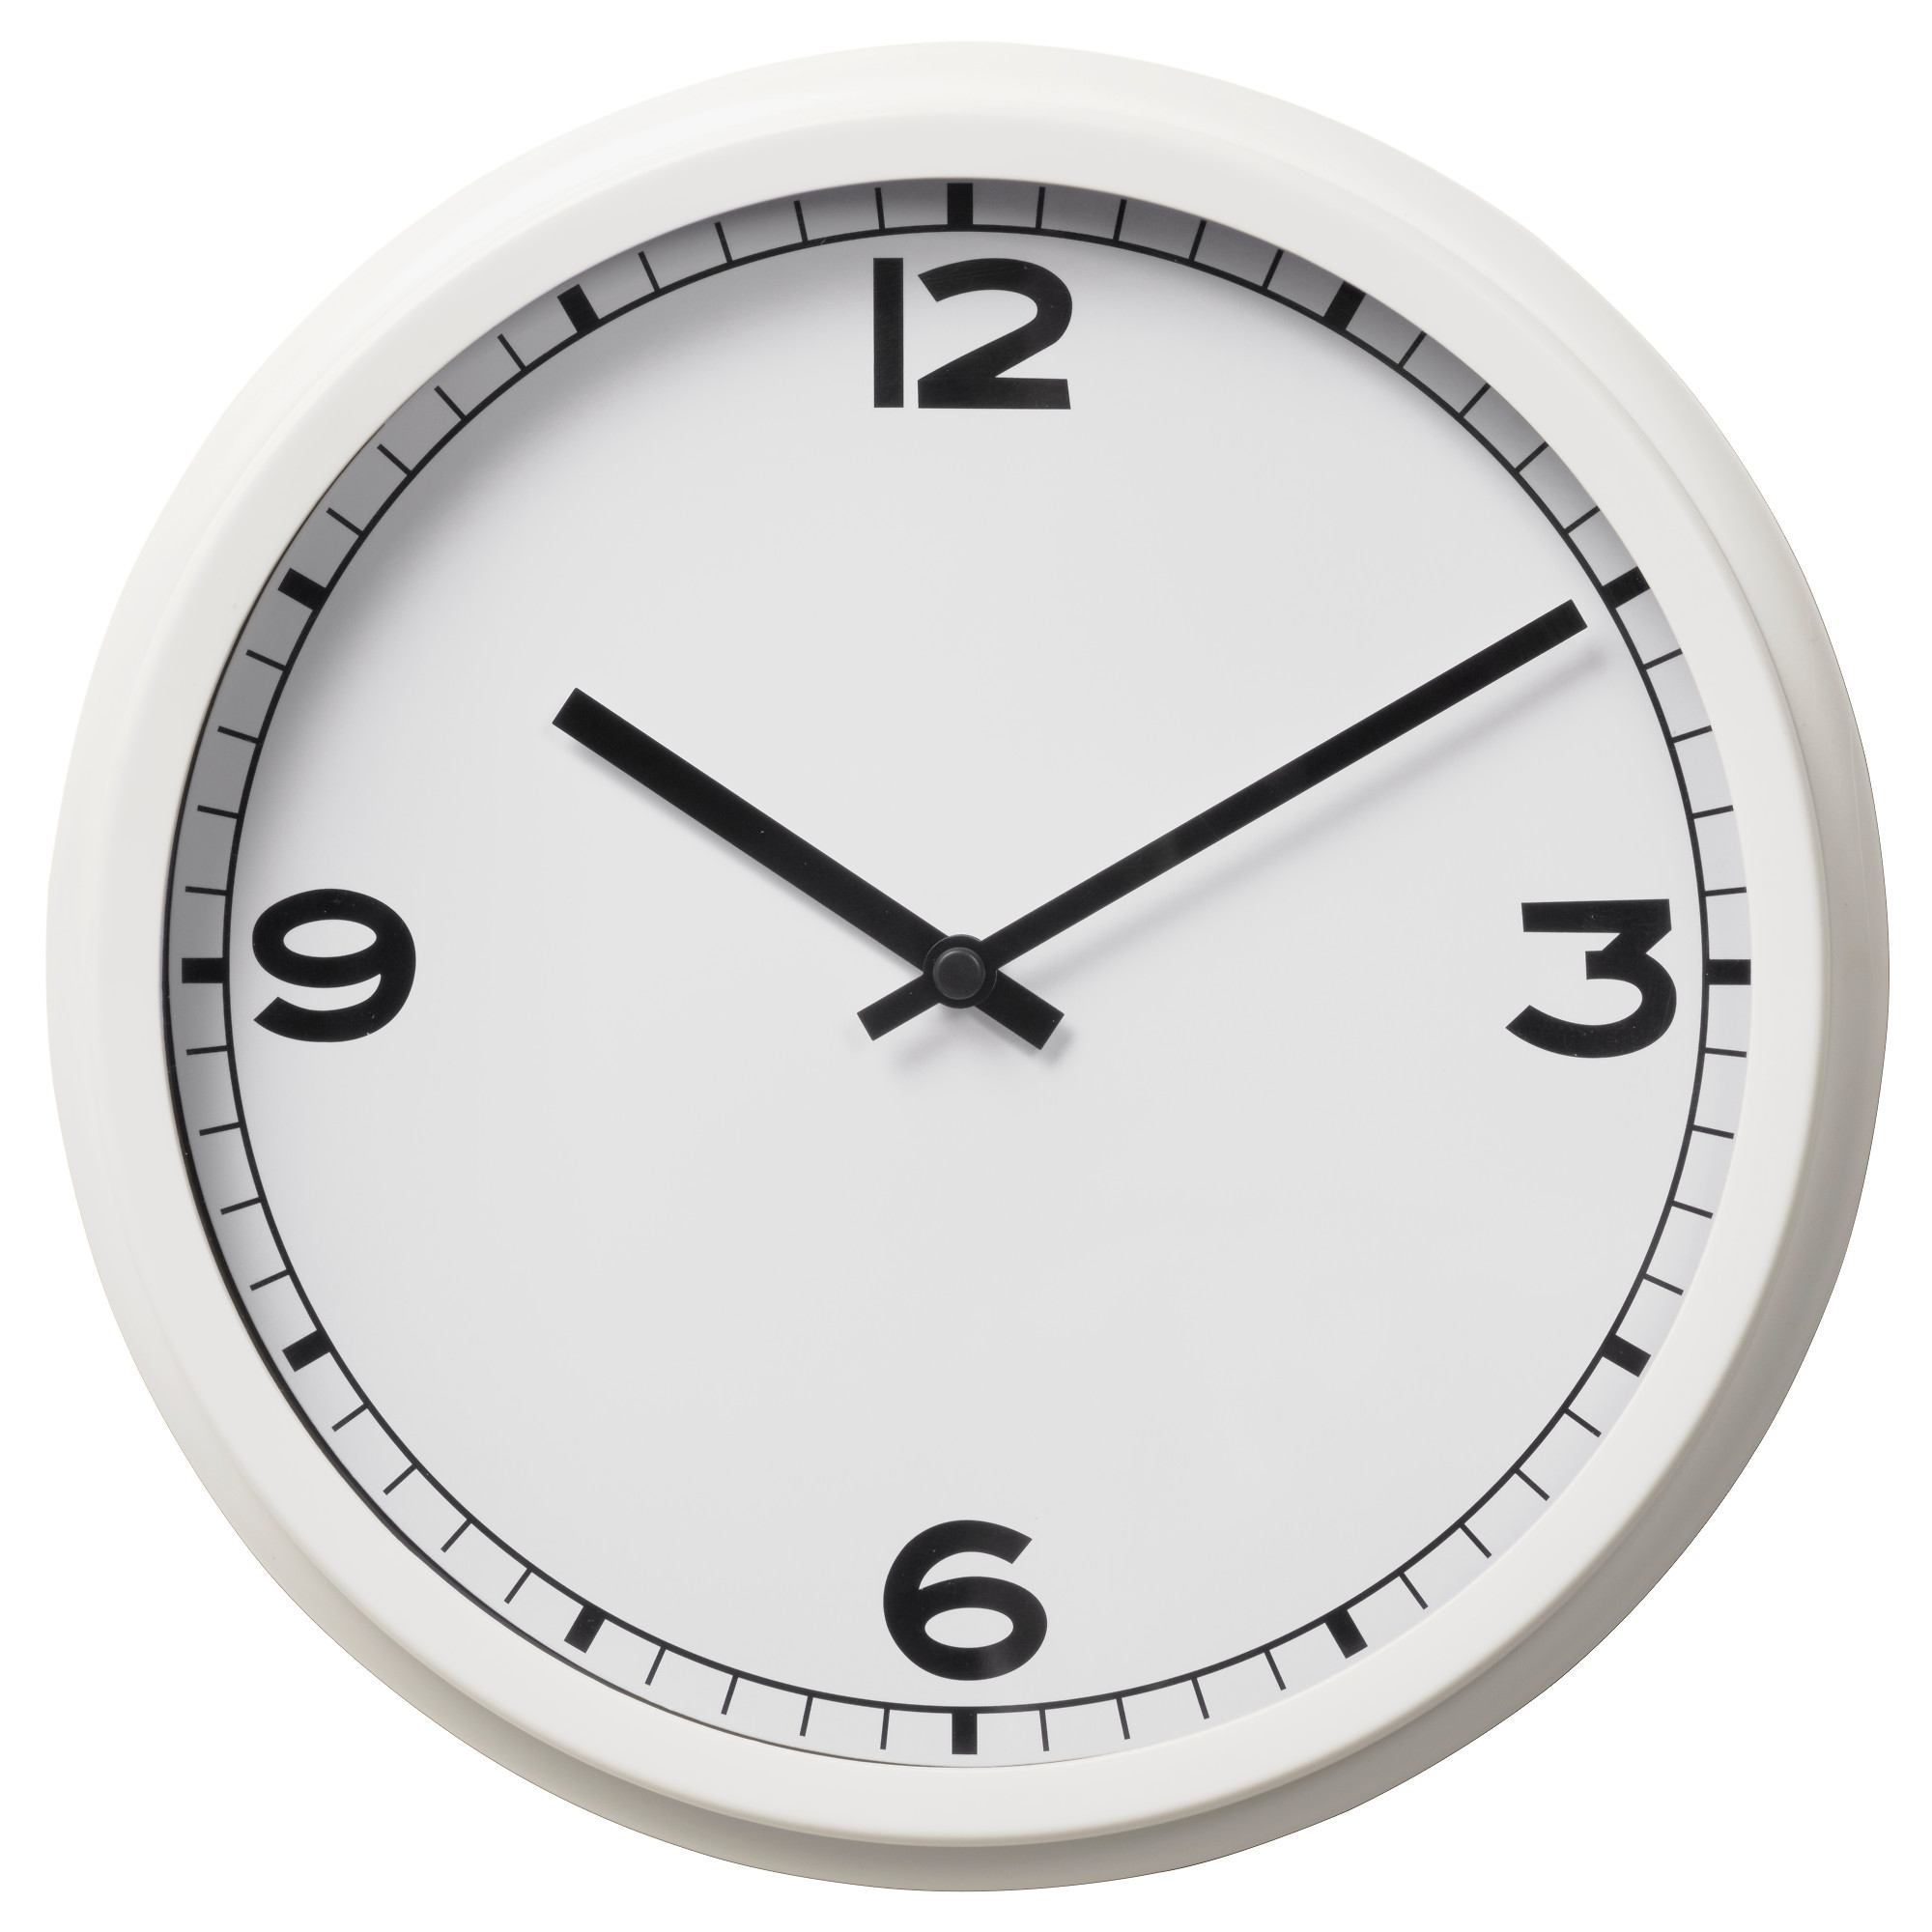 Часы настенные стеклянные круглые (D = 20 см) - 3na4 - Типография Москва